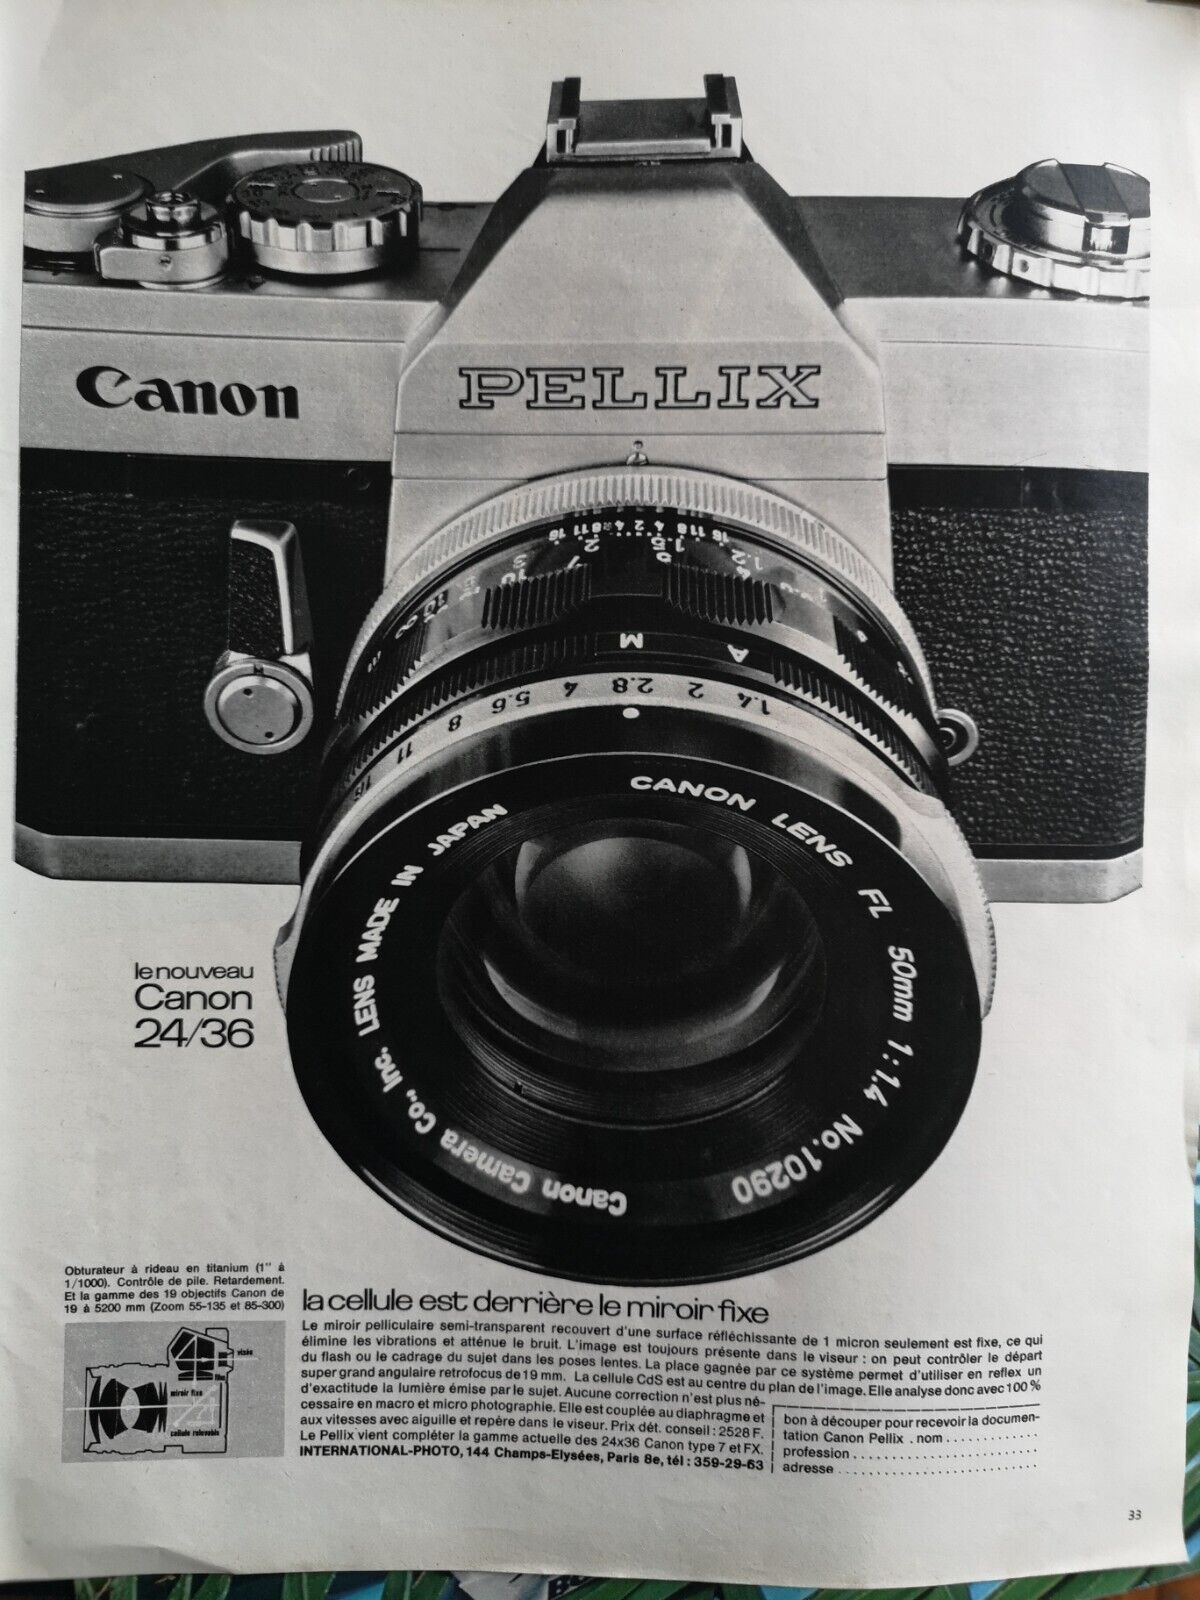 1965 ADVERTISEMENT - CANON 24/36 PELIX - Camera - 931 Curtain Shutter